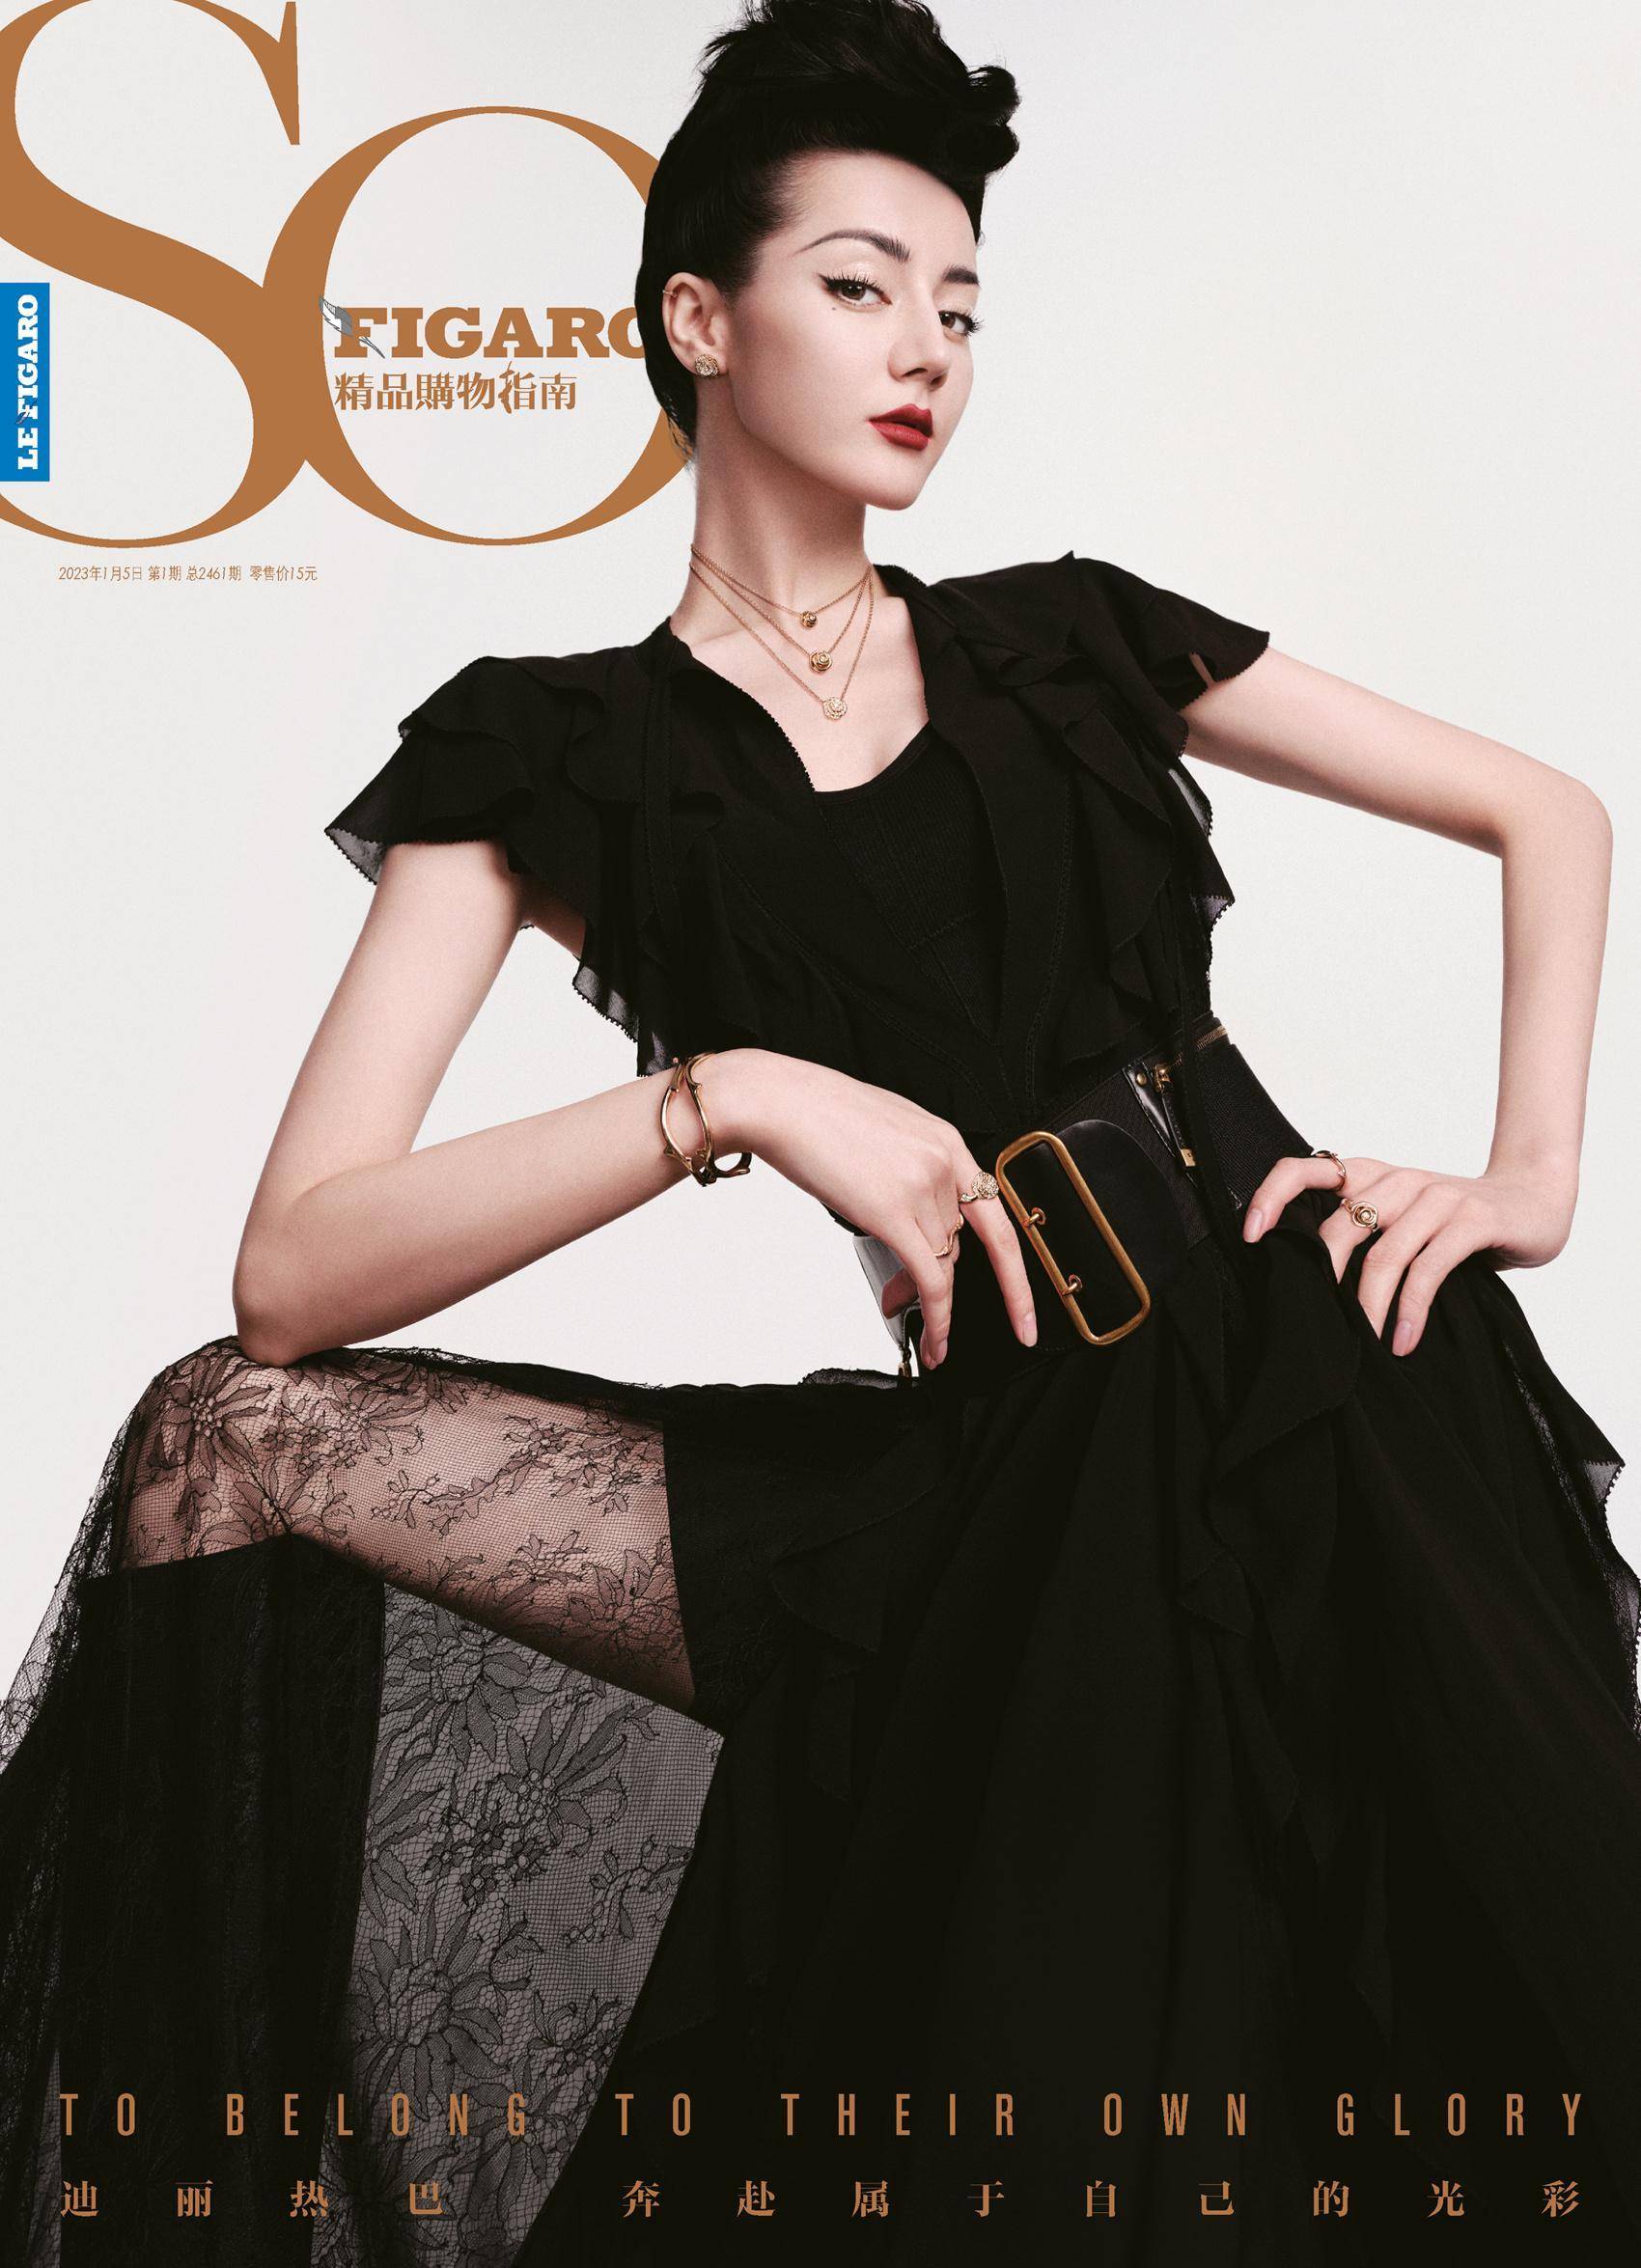 迪丽热巴sofigaro开年刊封面,穿黑色薄纱身材曼妙,高贵女王范